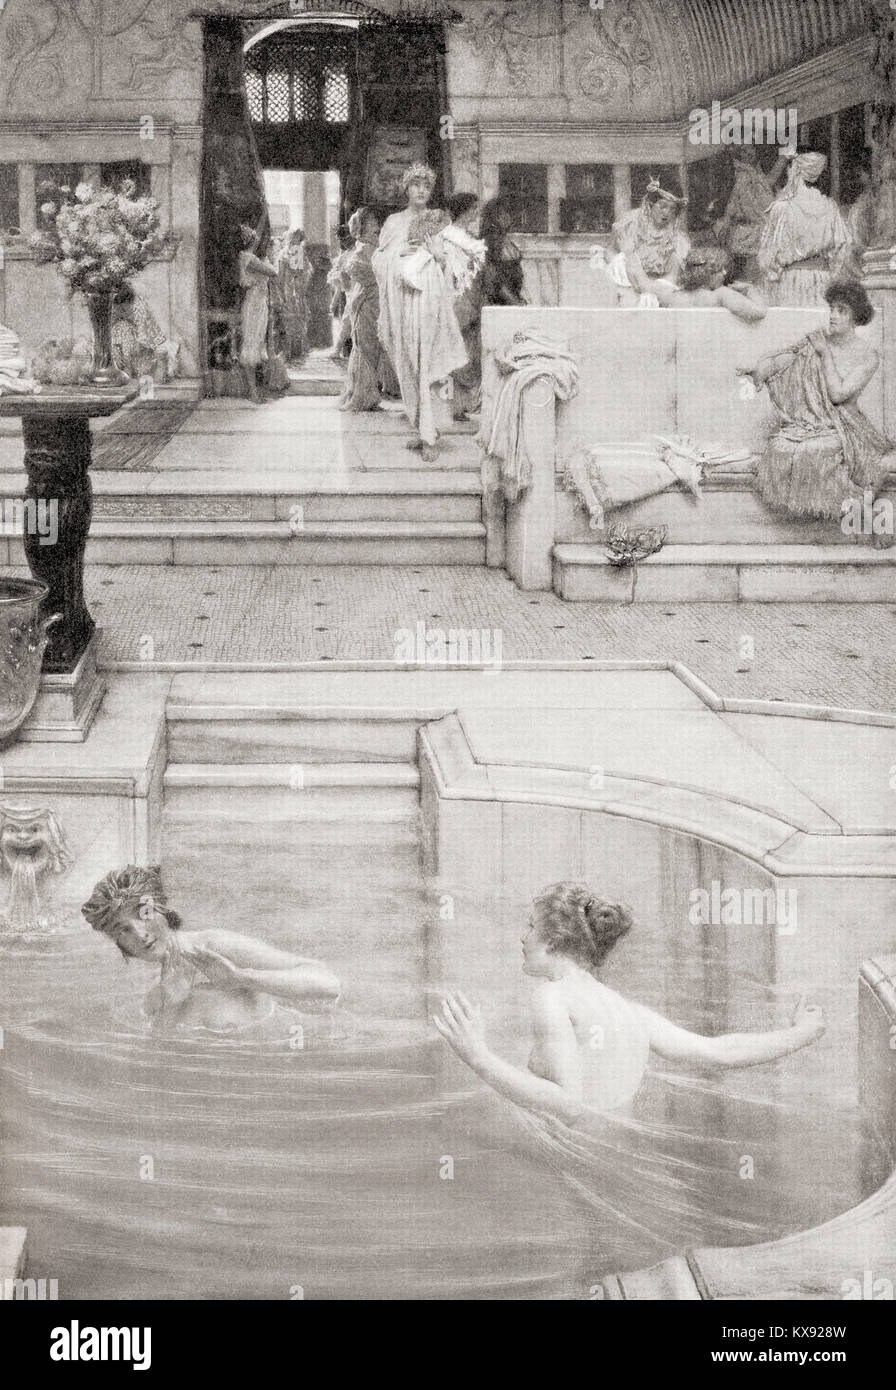 Meine Damen baden in den öffentlichen Bädern im antiken Rom. Von Hutchinson's Geschichte der Nationen, veröffentlicht 1915. Stockfoto